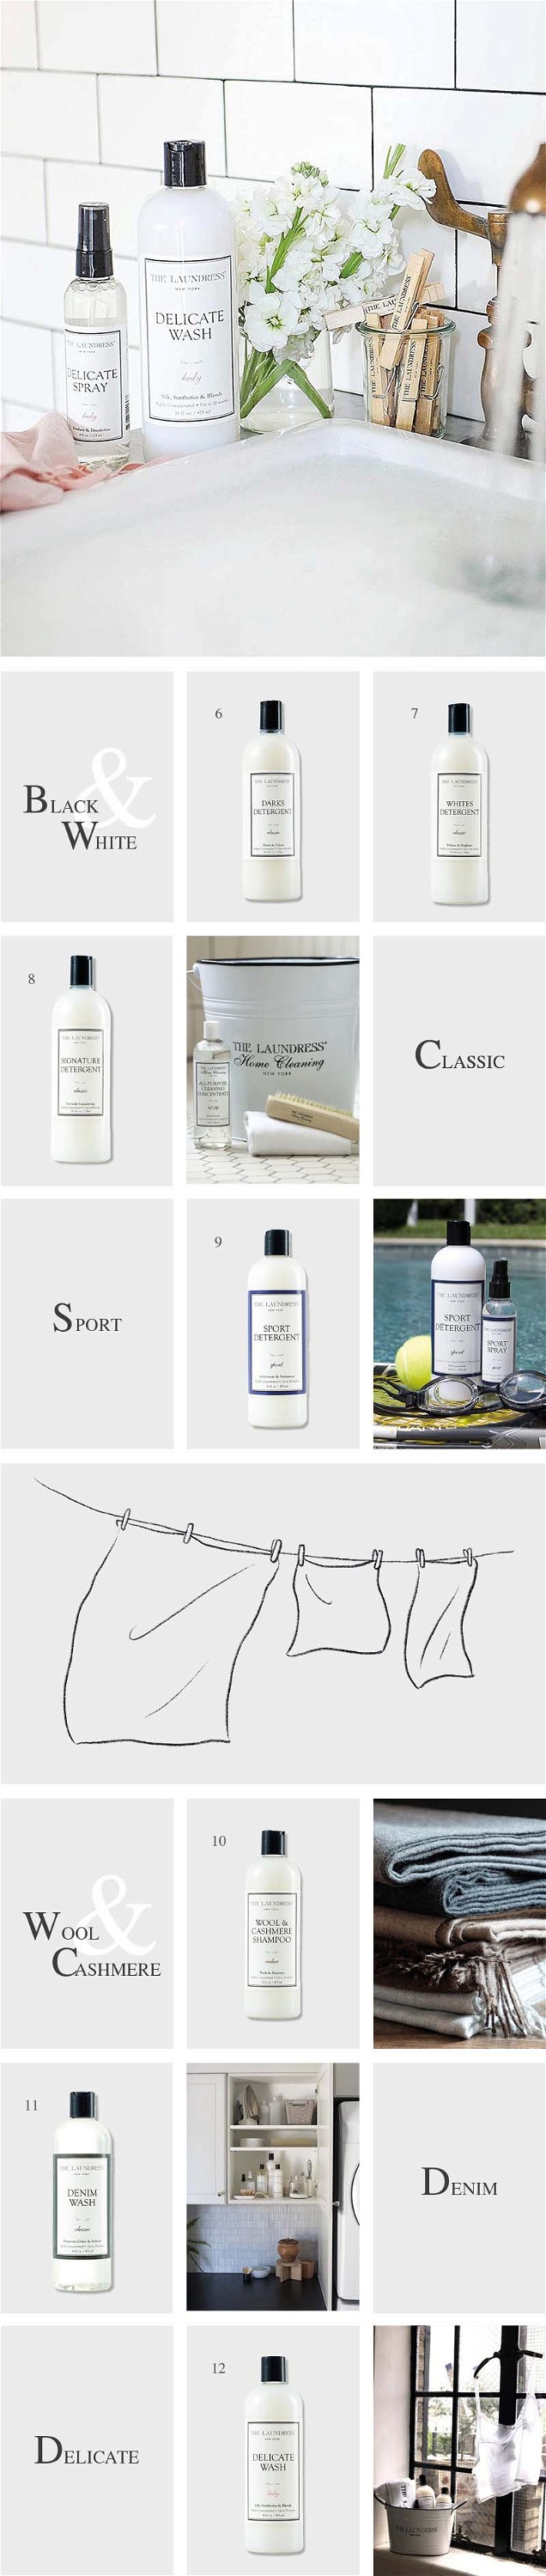 Fotocollage, die verschiedene Produkte von the Laundress zeigt